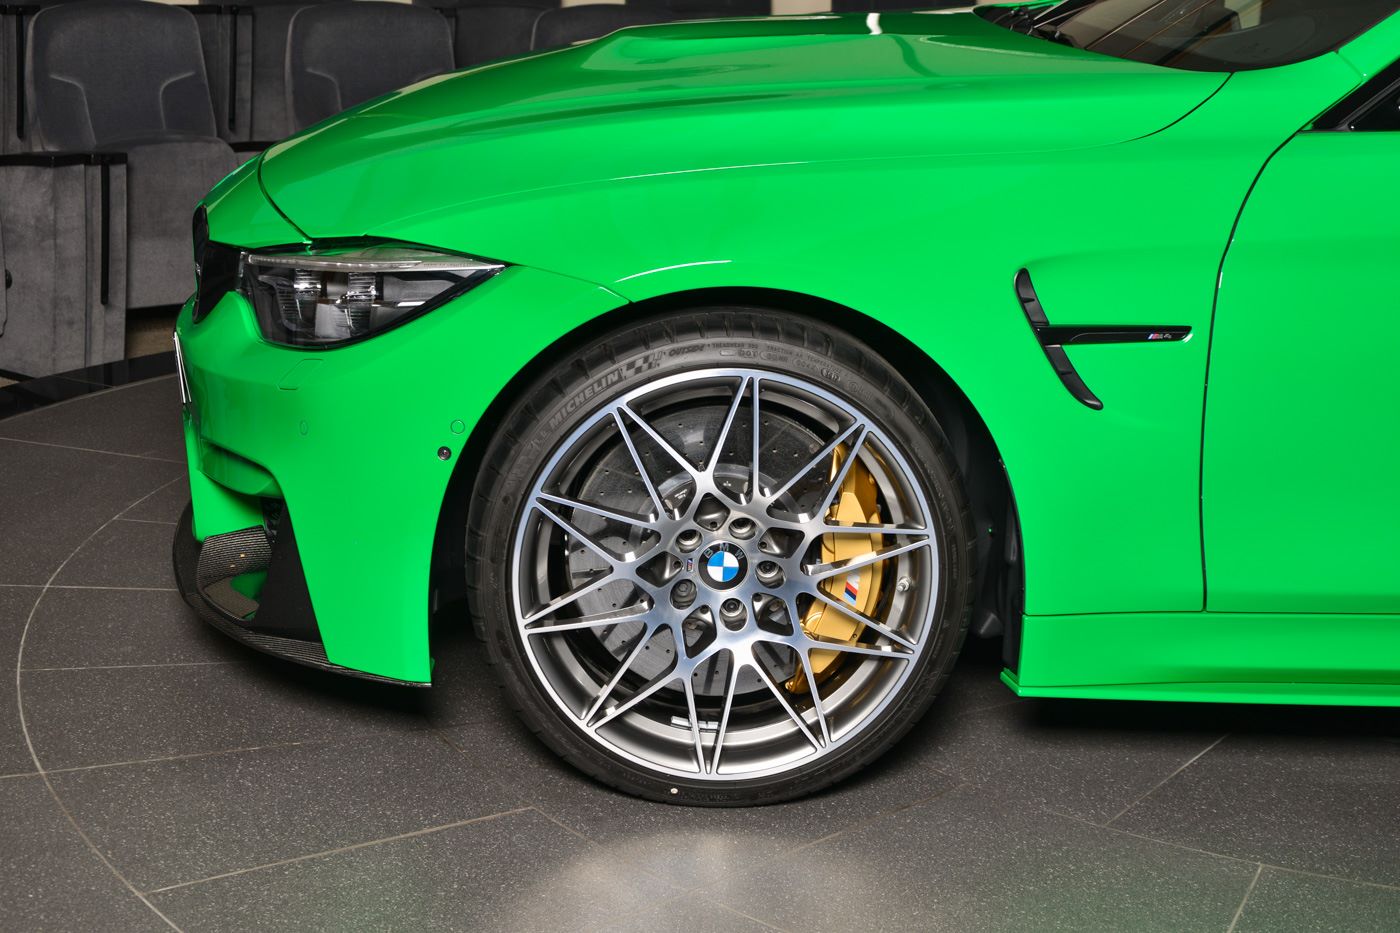 BMW M4 Signal Green